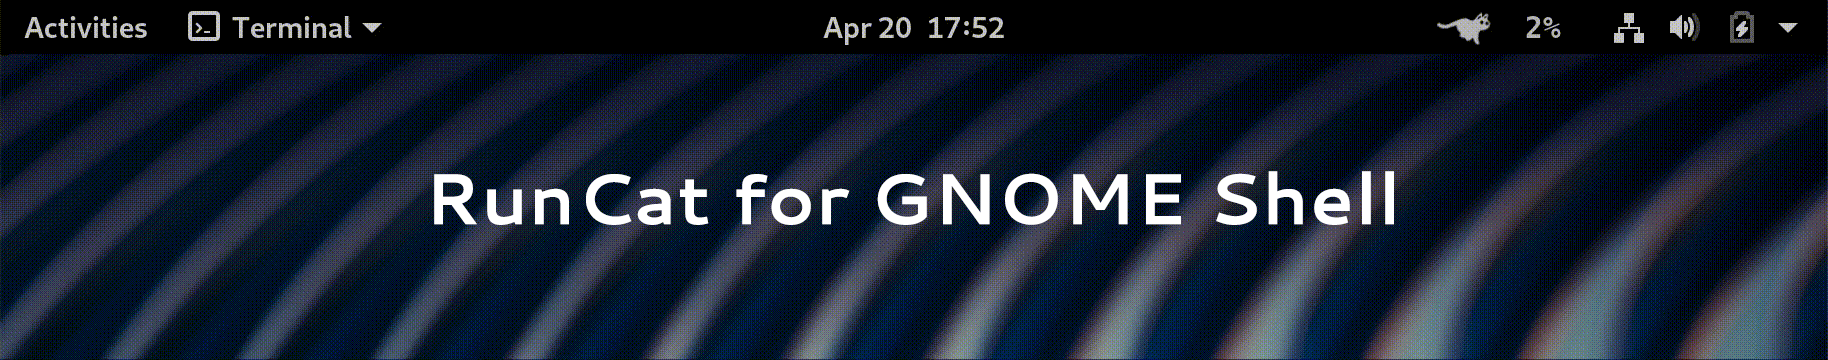 RunCat for GNOME Shell